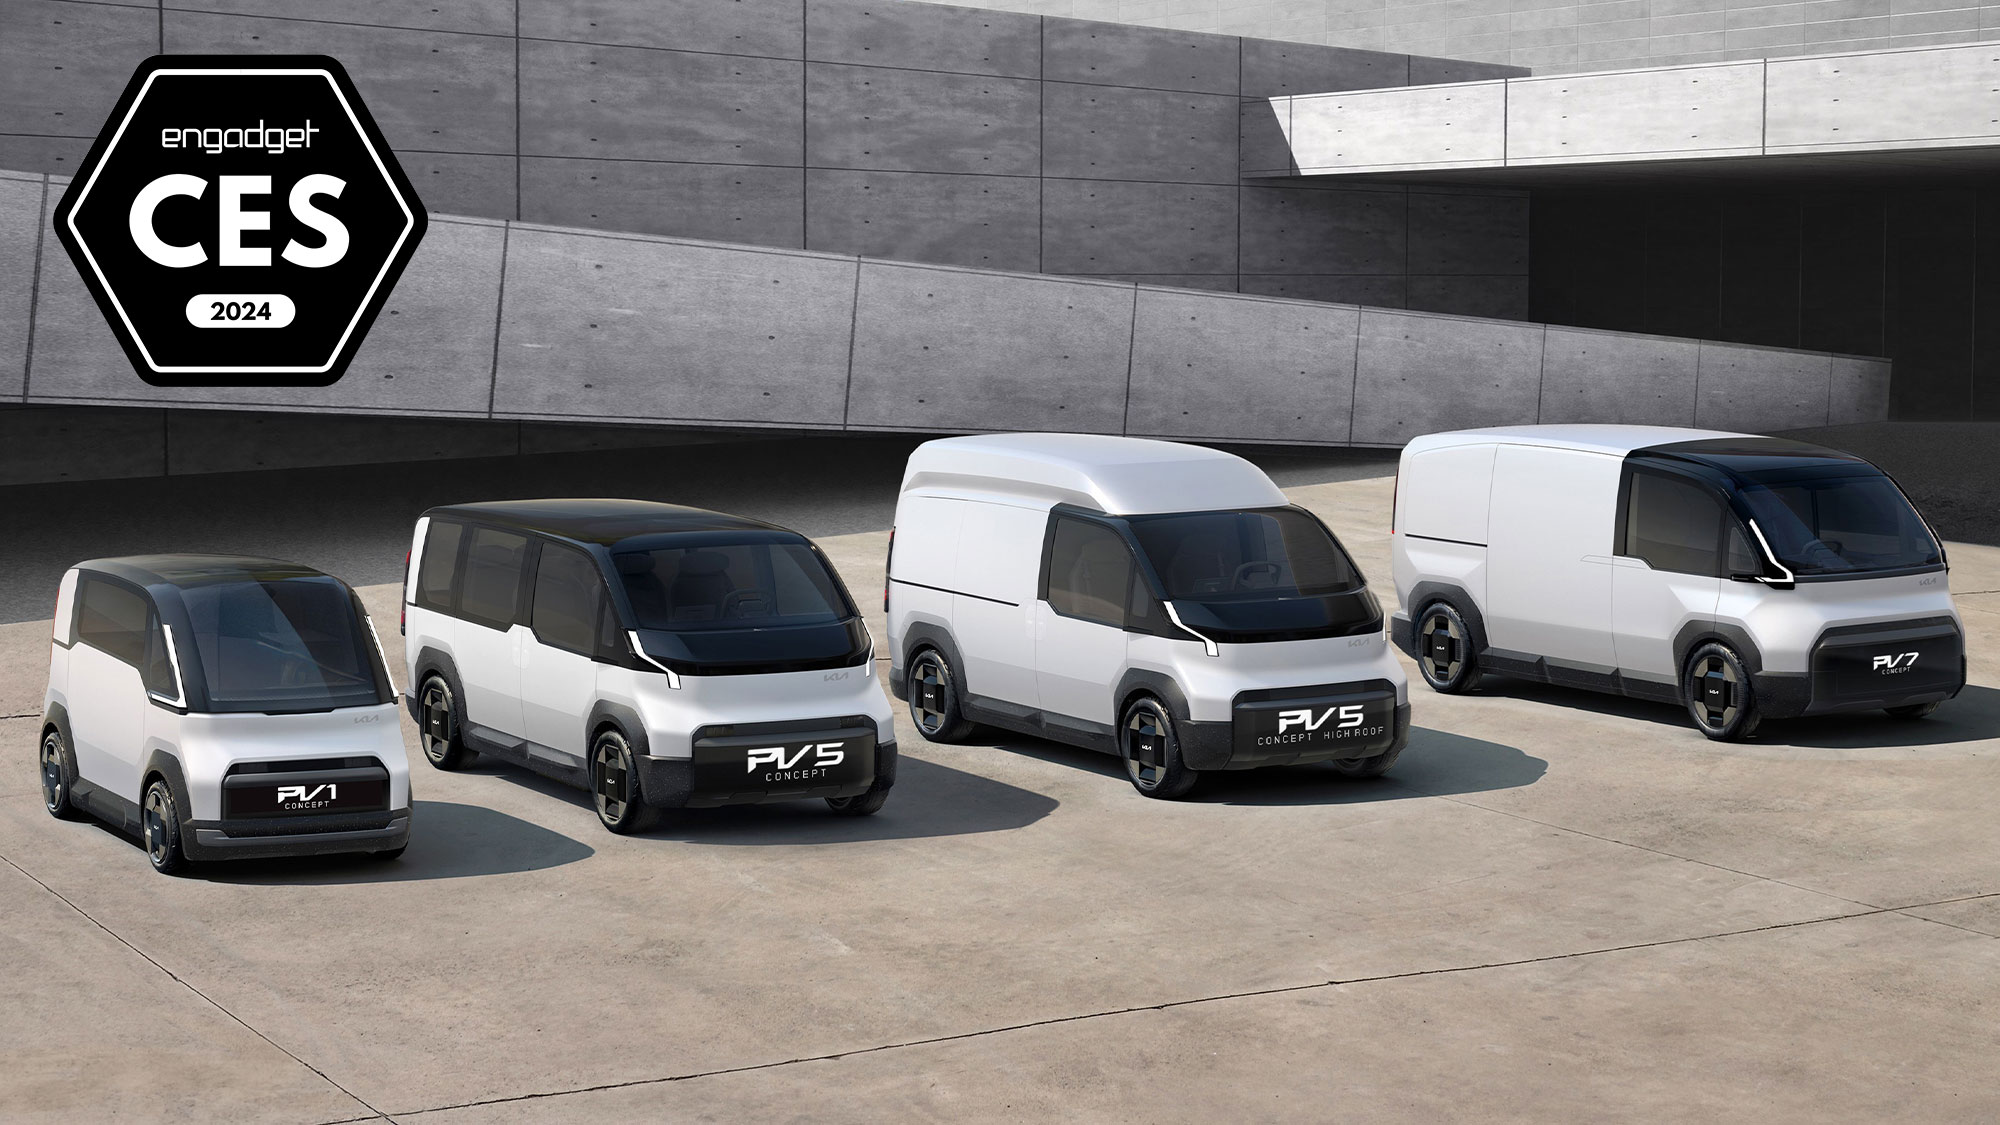 تصویری با نشان Engadget Best of CES 2024 که محصول را نشان می‌دهد: Kia Platform Beyond Vehicles به‌عنوان مجموعه‌ای از چهار وسیله نقلیه به سبک ون در یک محوطه بیرونی سنگ‌فرش‌شده بزرگ با معماری مدرن در مقیاس بزرگ پشت سرشان.